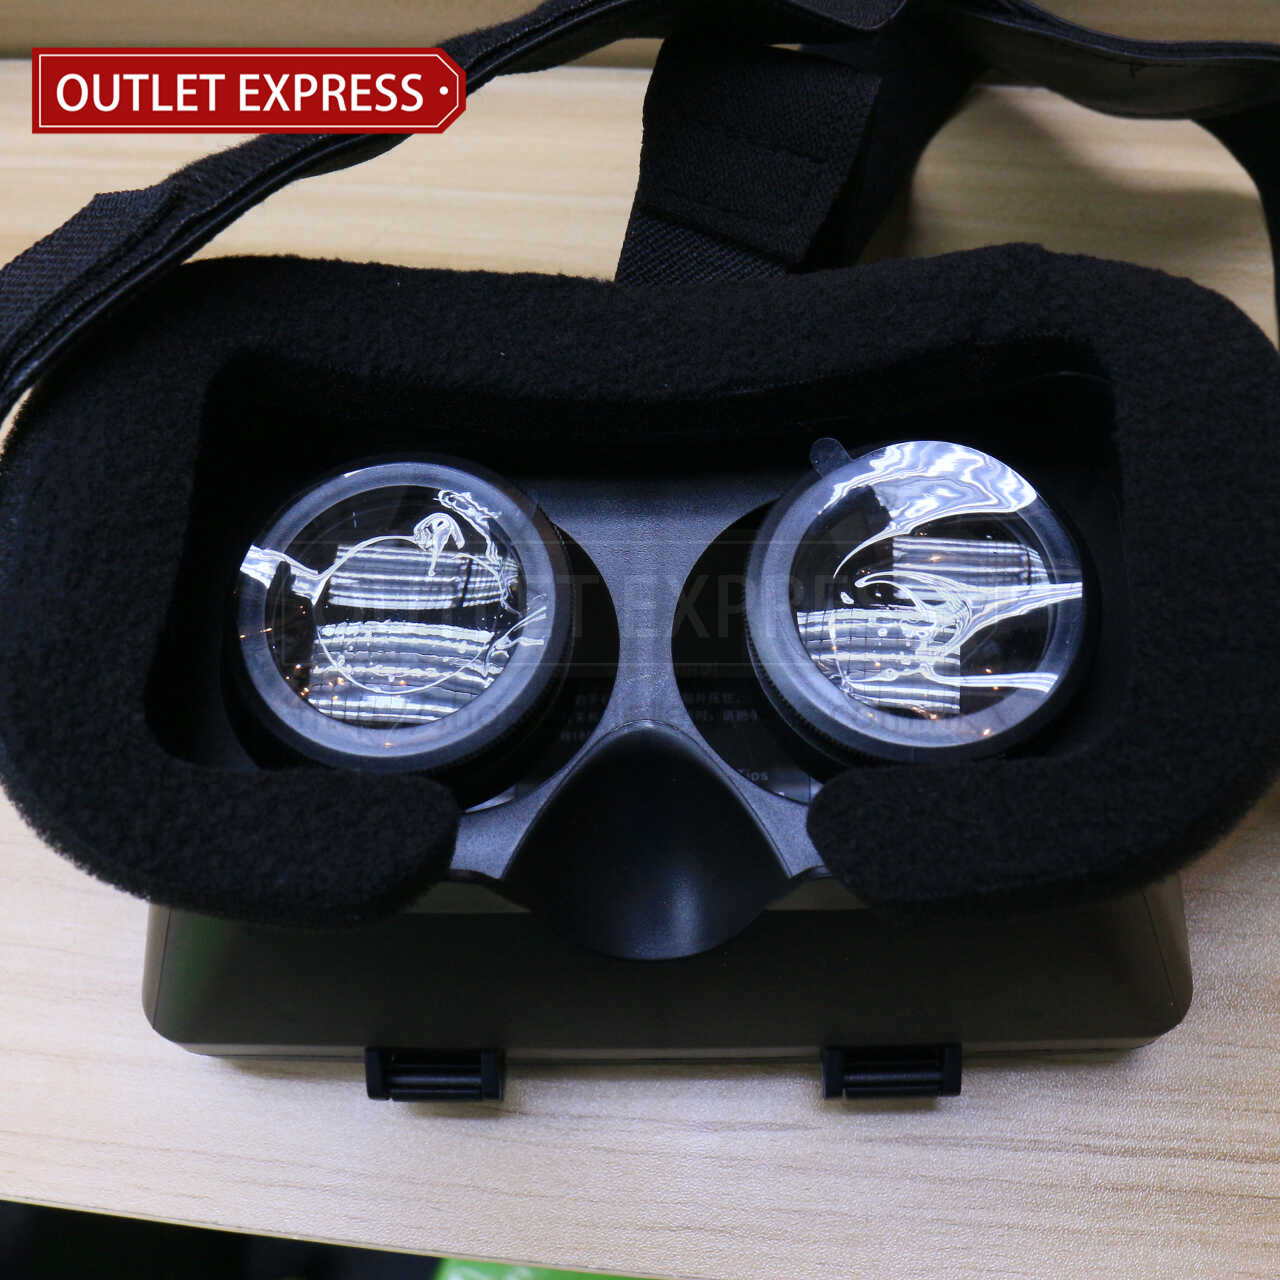 小宅魔鏡一代  VR虛擬實境眼鏡- Outlet Express HK生活百貨城實拍相片